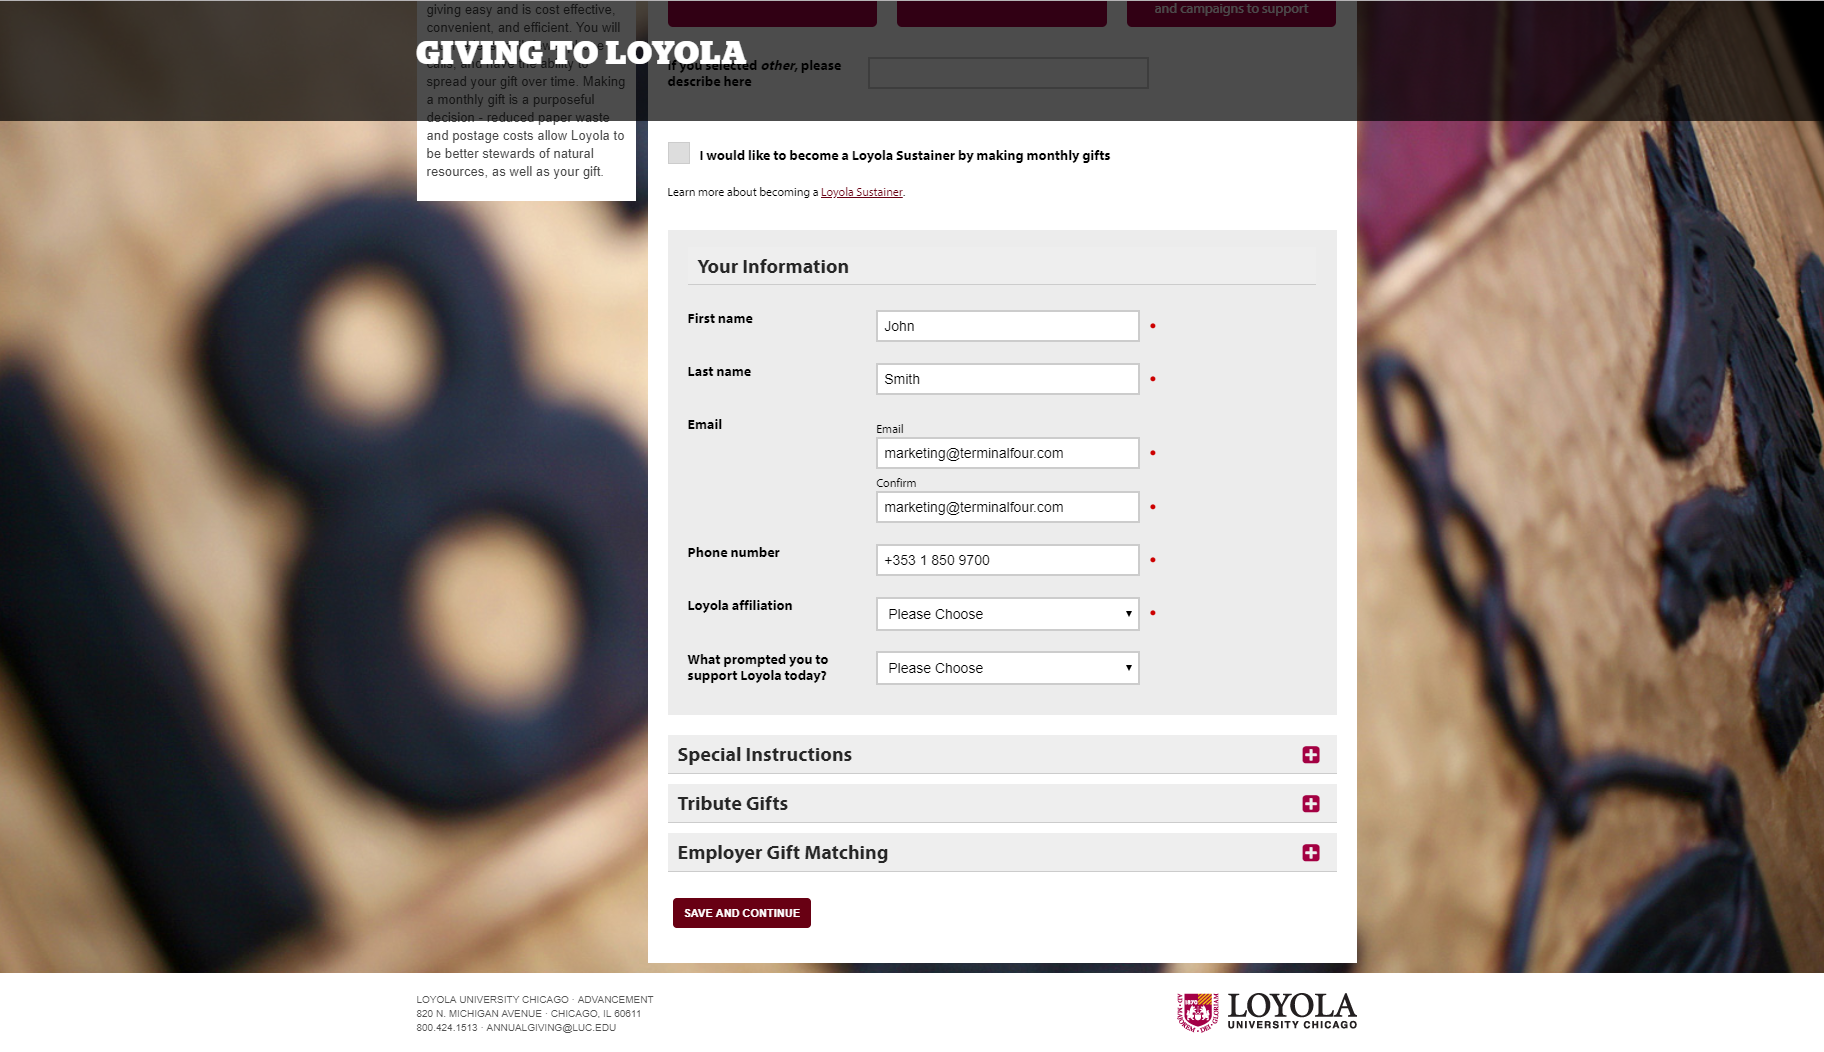 Image of a form on Loyola University's website